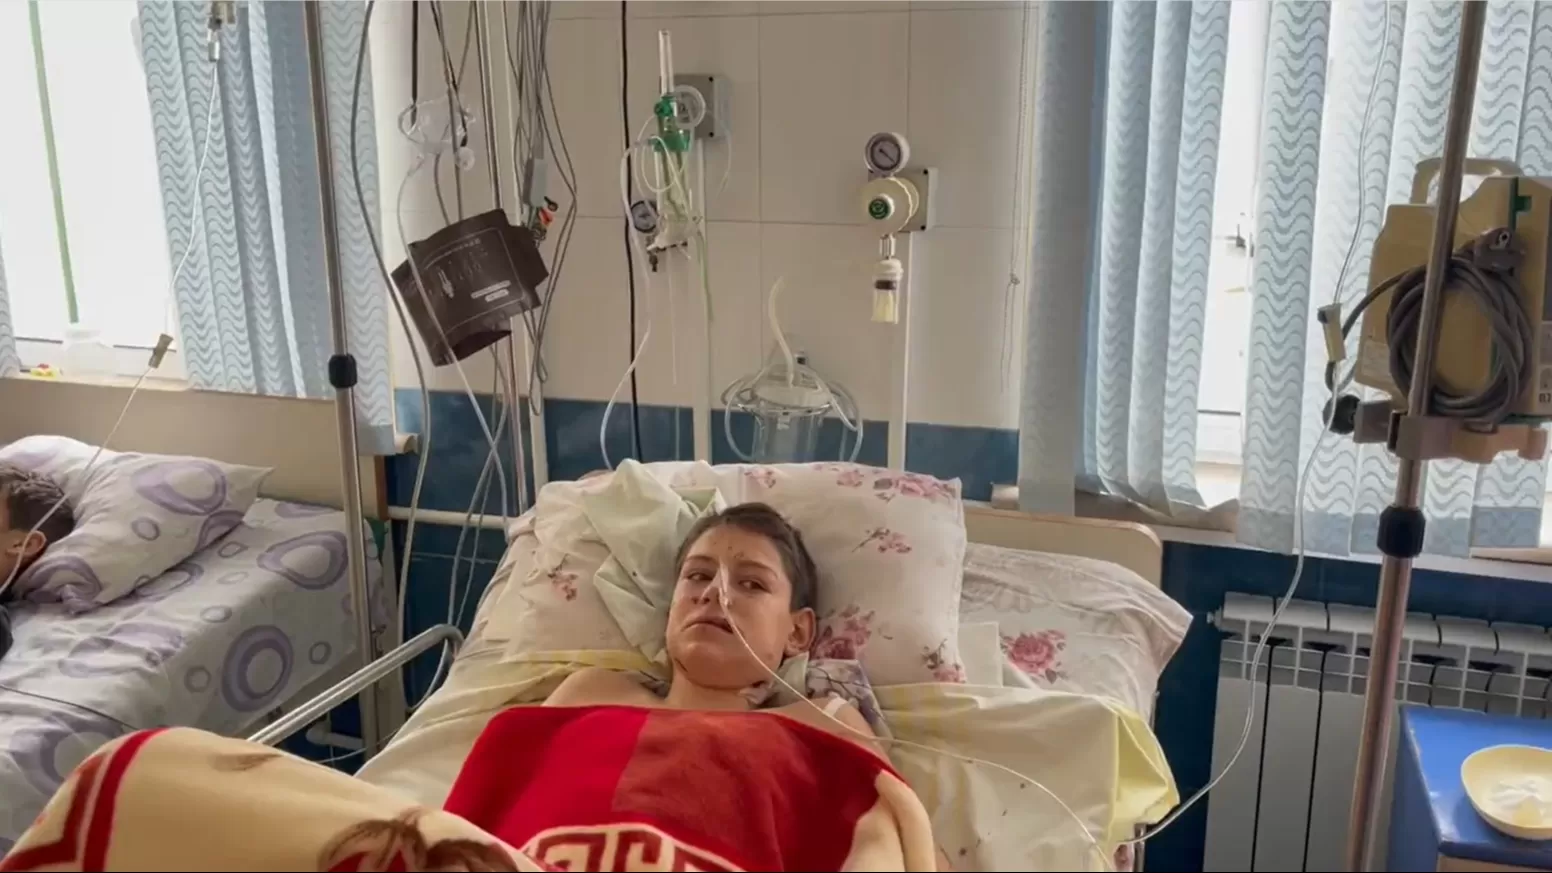 ՏԵՍԱՆՅՈՒԹ. 13-ամյա Մկրտիչն ու նրա մայրը ծանր վիրավորվել են Արցախում իրենց տան վրա ադրբեջանական գնդակոծության հետևանքով. Բեգլարյան